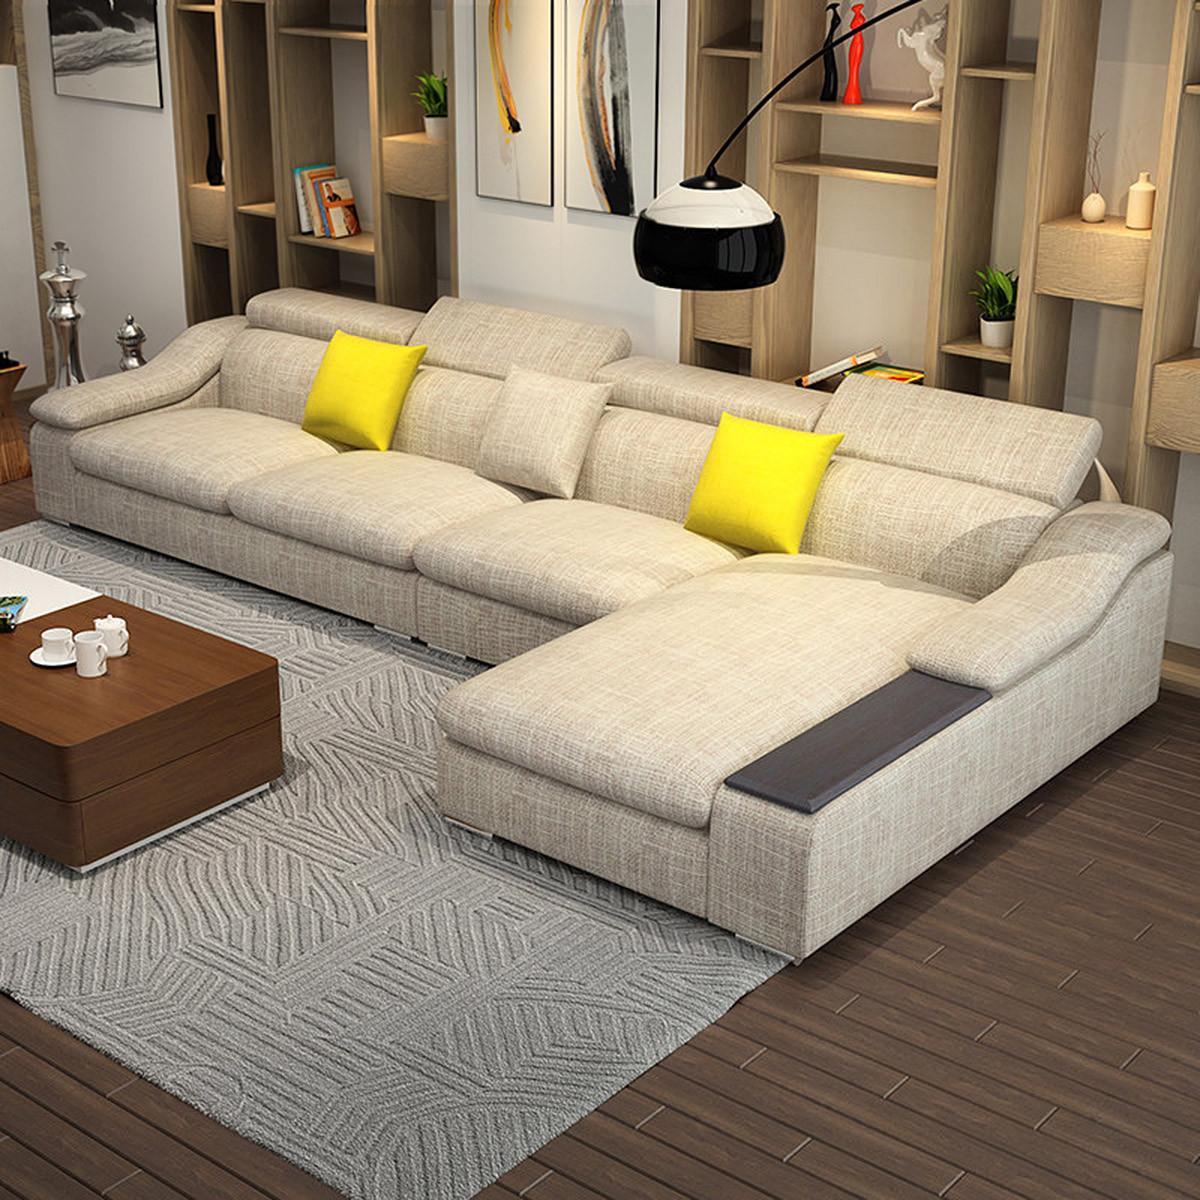 西柏尔 布艺沙发客厅整装北欧布沙发大小户型沙发现代简约组合沙发可